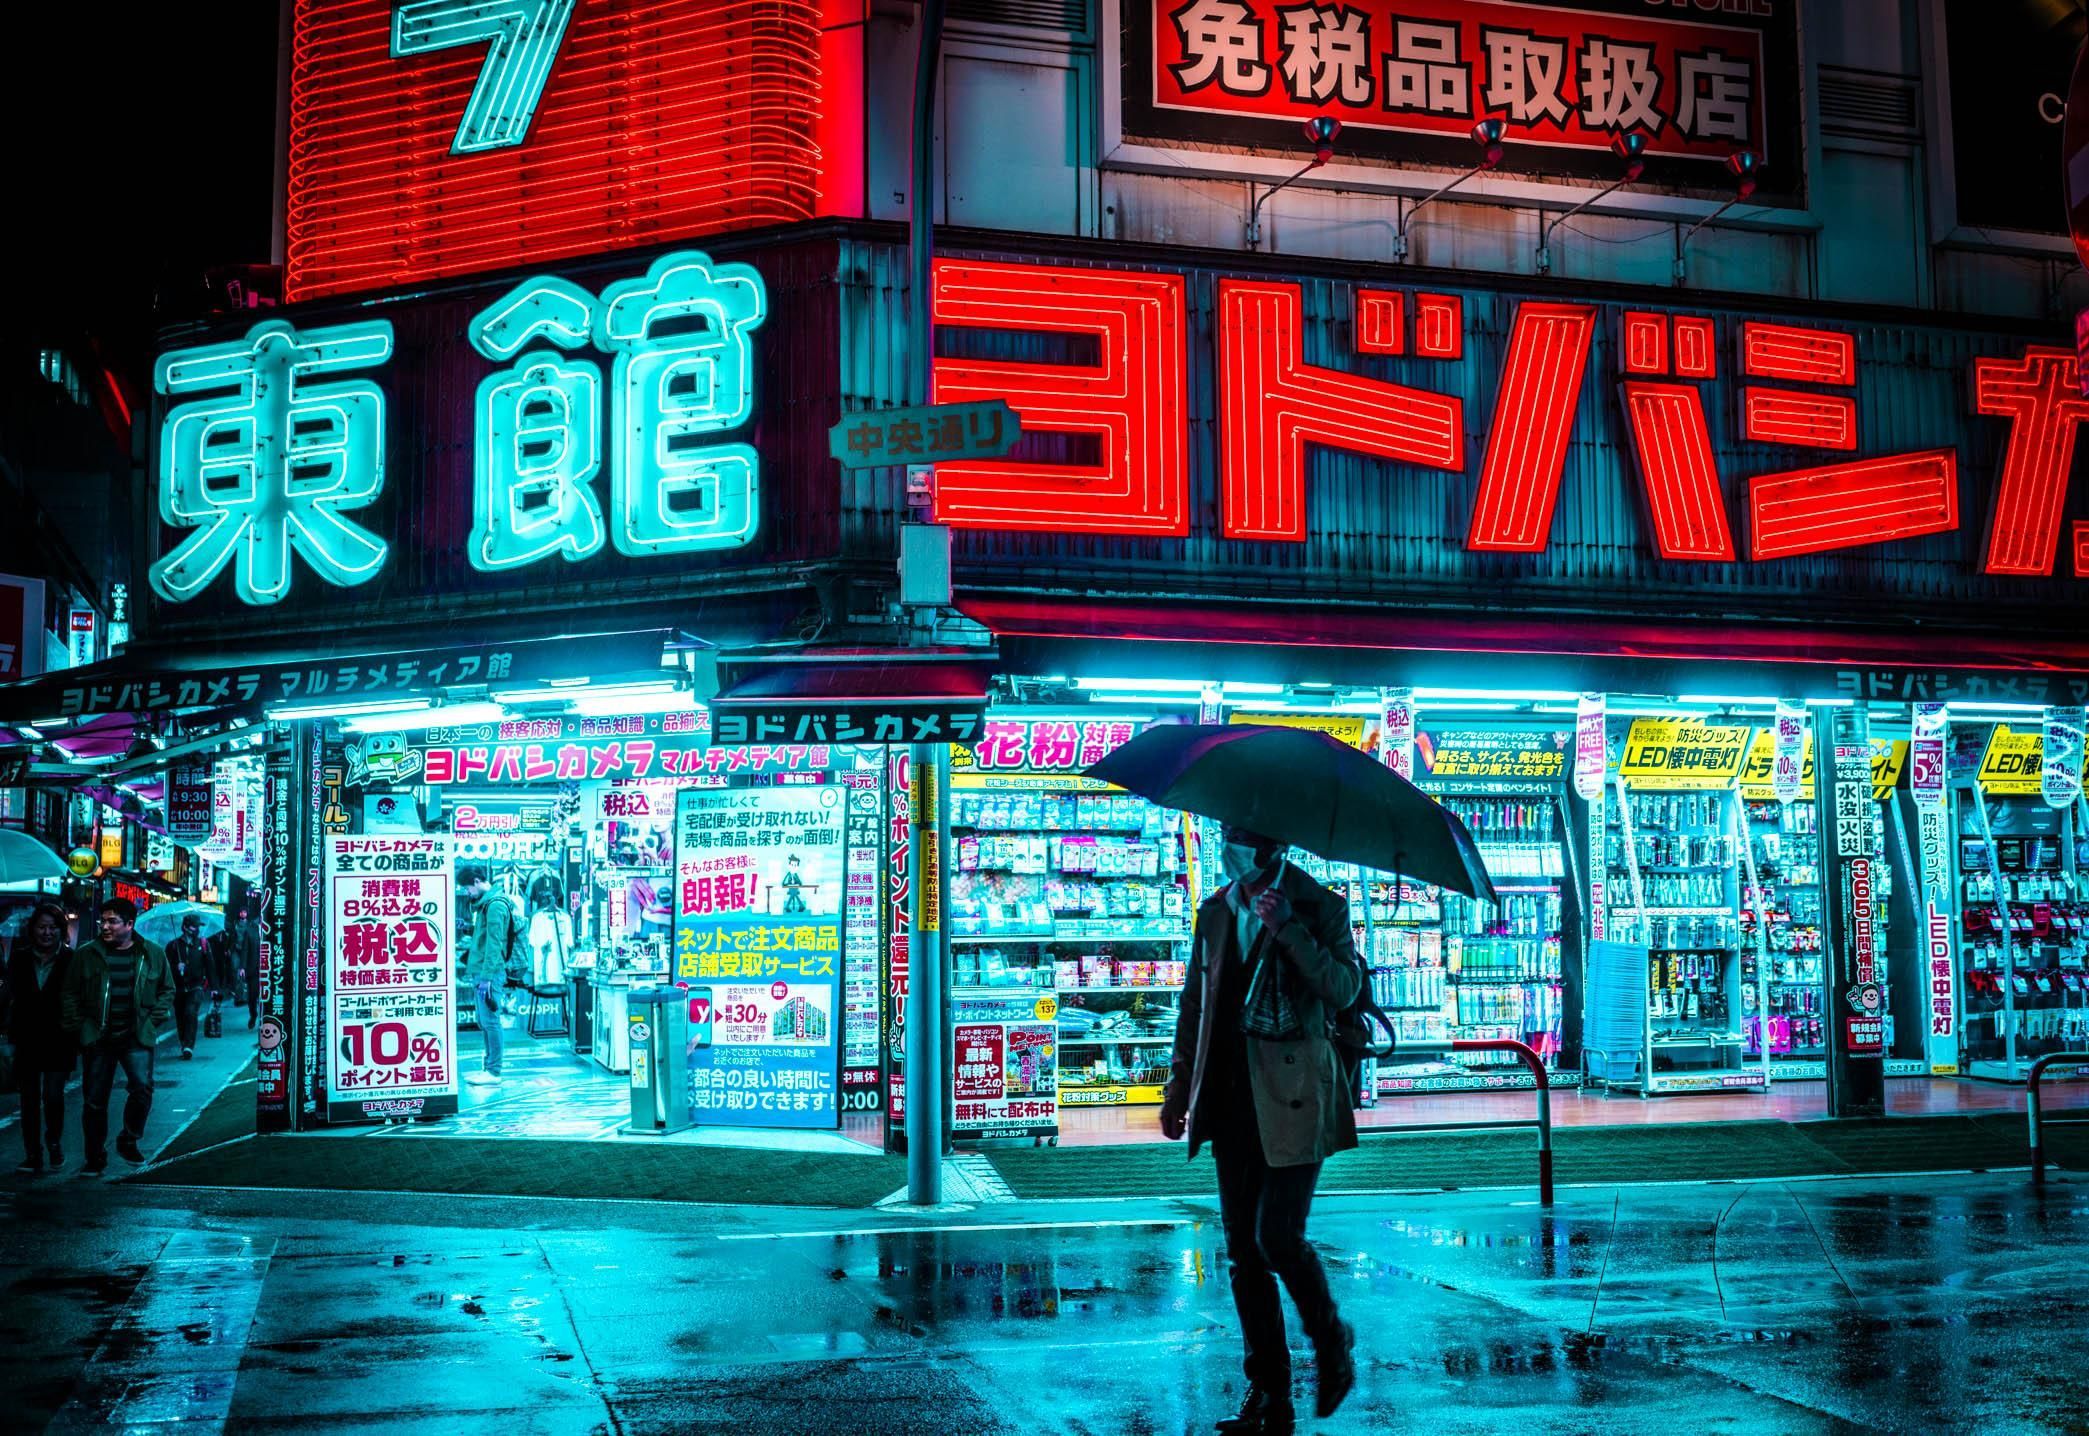 ITAP of Tokyo looking like Blade Runner again